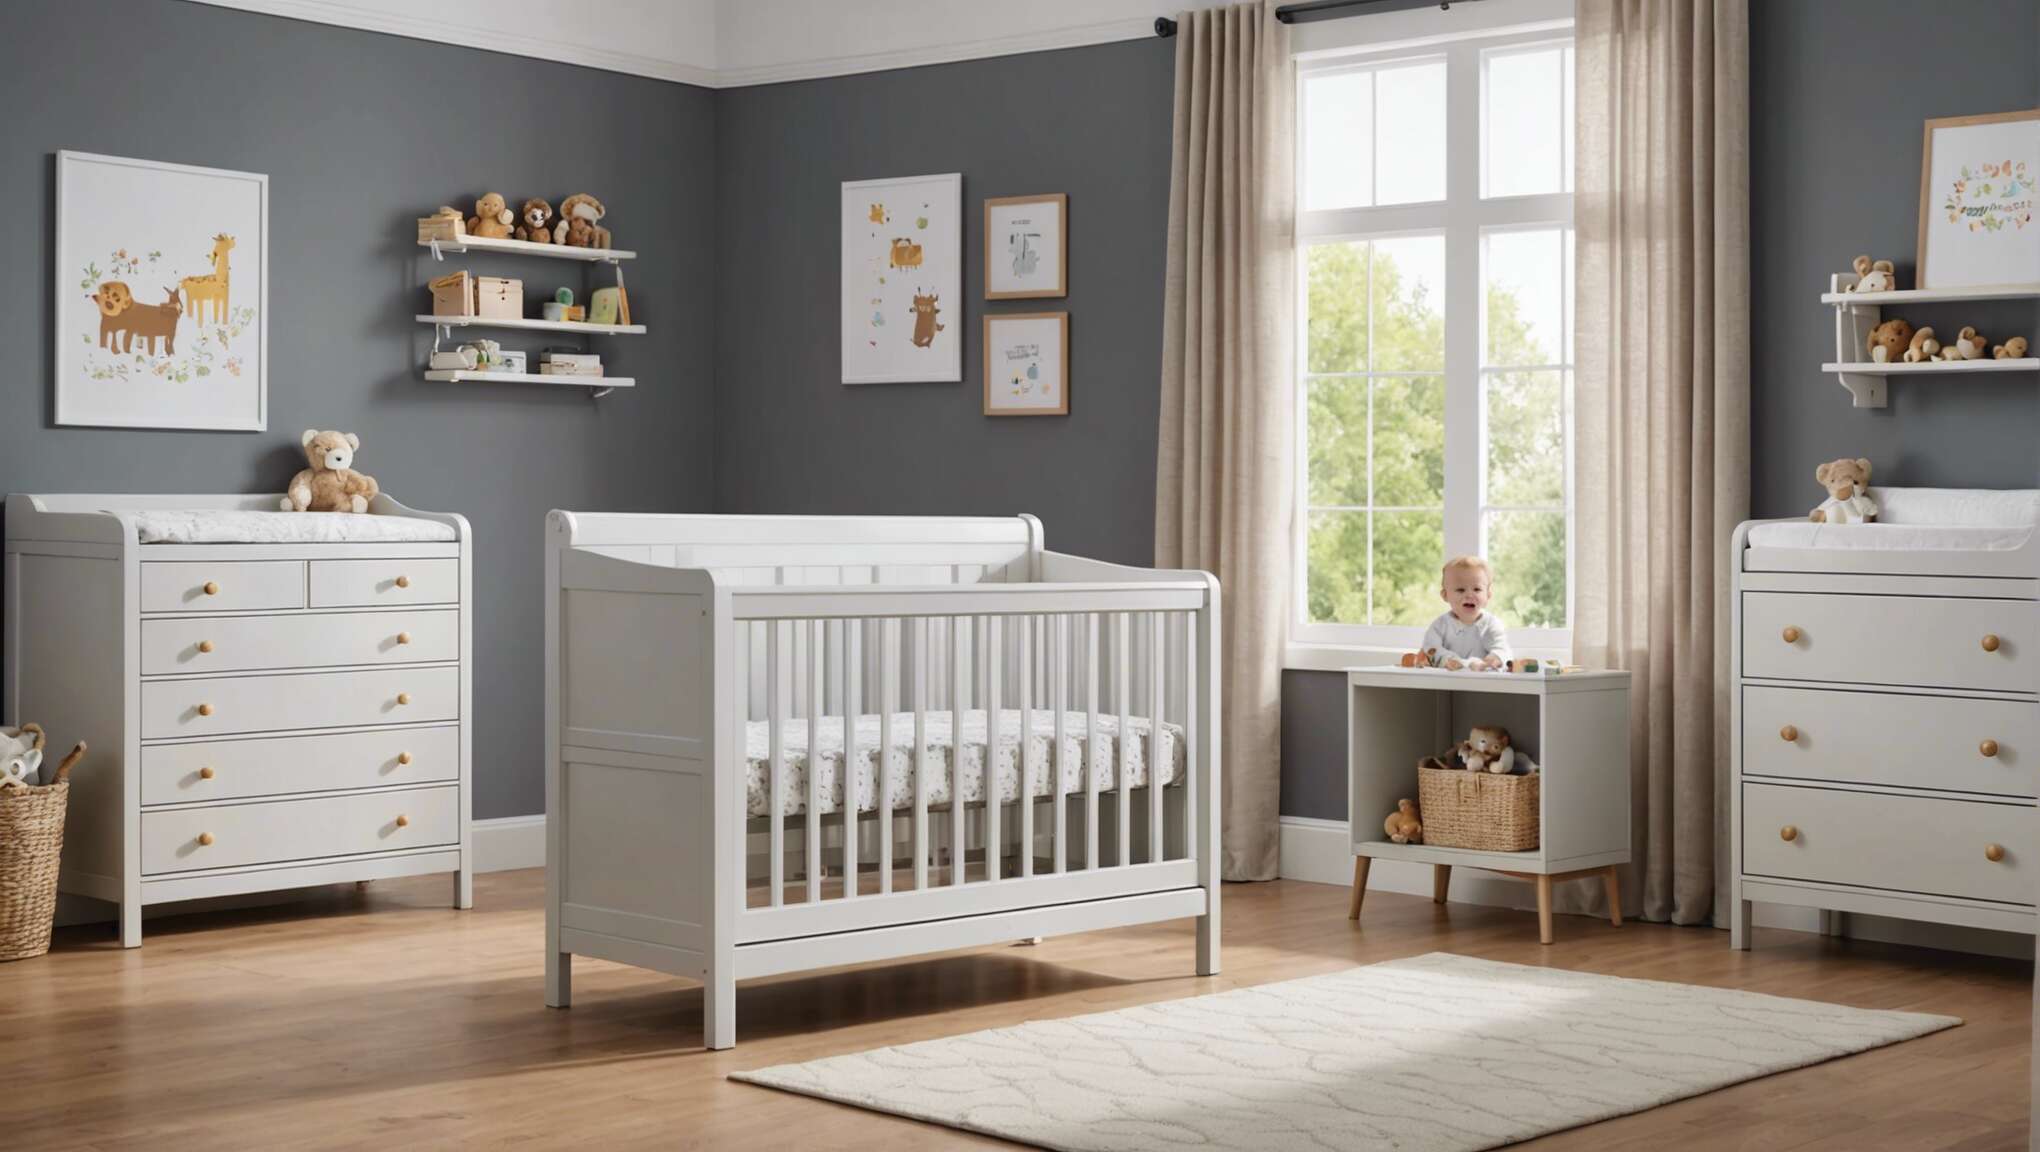 Sécurité avant tout : sélectionner un meuble sûr pour bébé